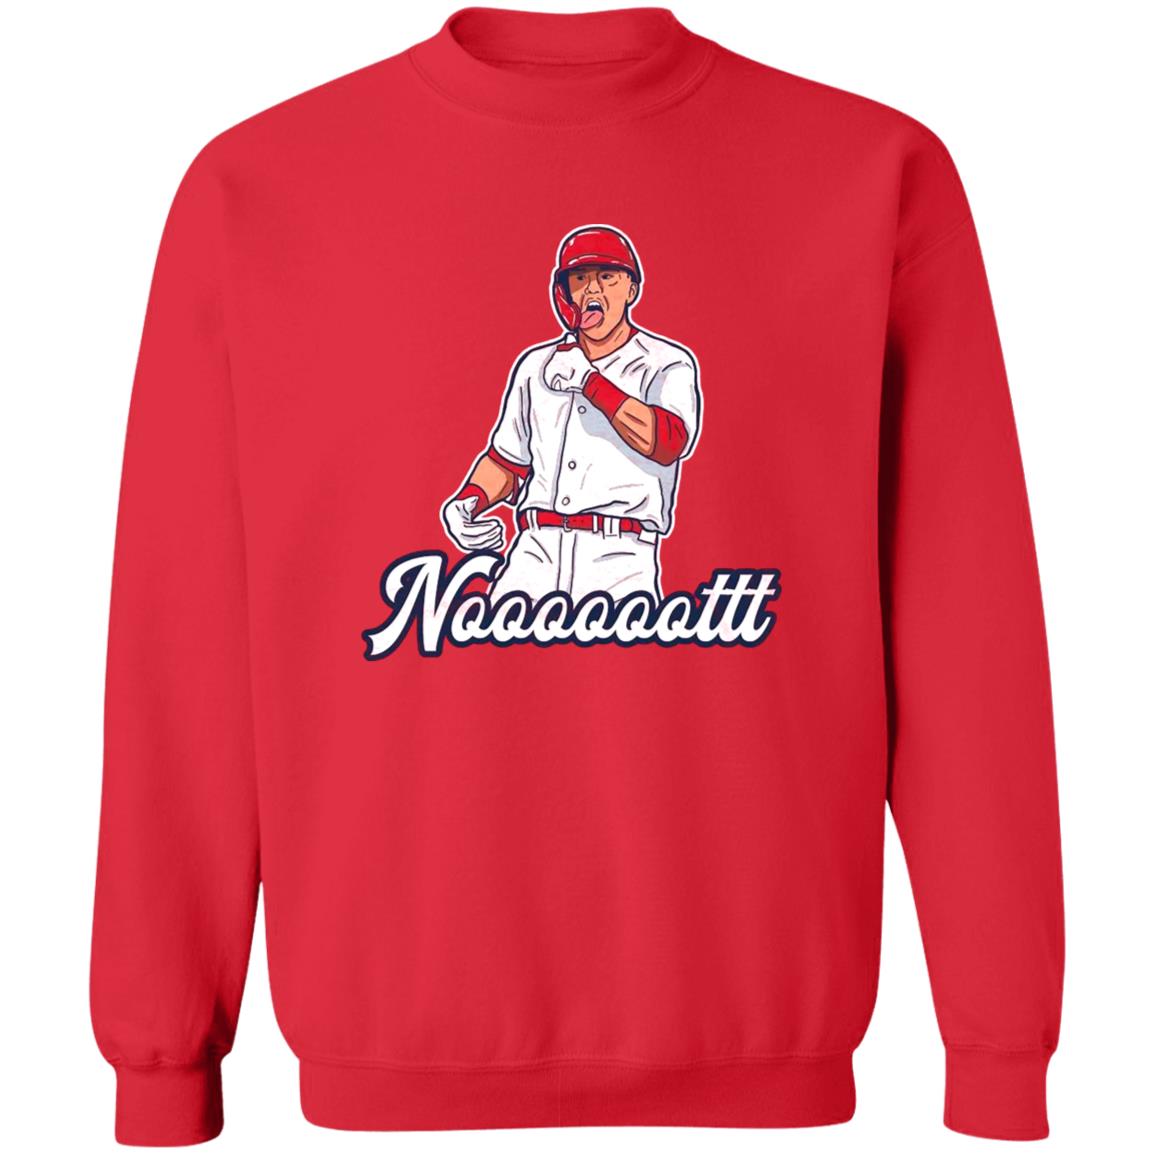 Lars Nootbaar St. Louis Cardinals signature shirt, hoodie, sweatshirt,  ladies tee and tank top